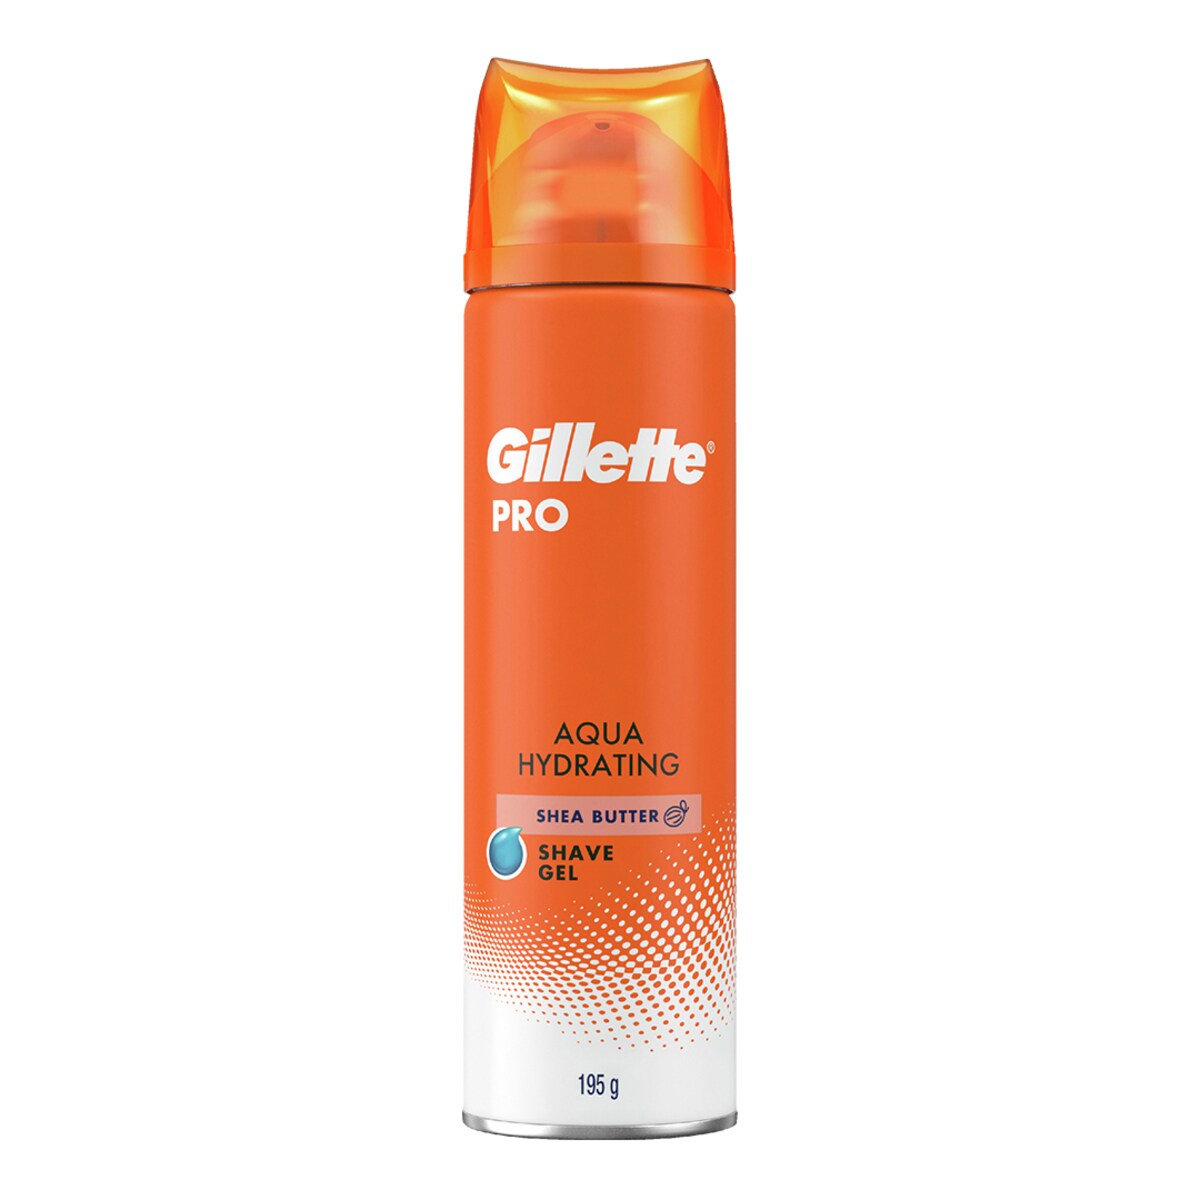 Gillette Pro Aqua Hydrating Shave Gel Shea Butter 195g